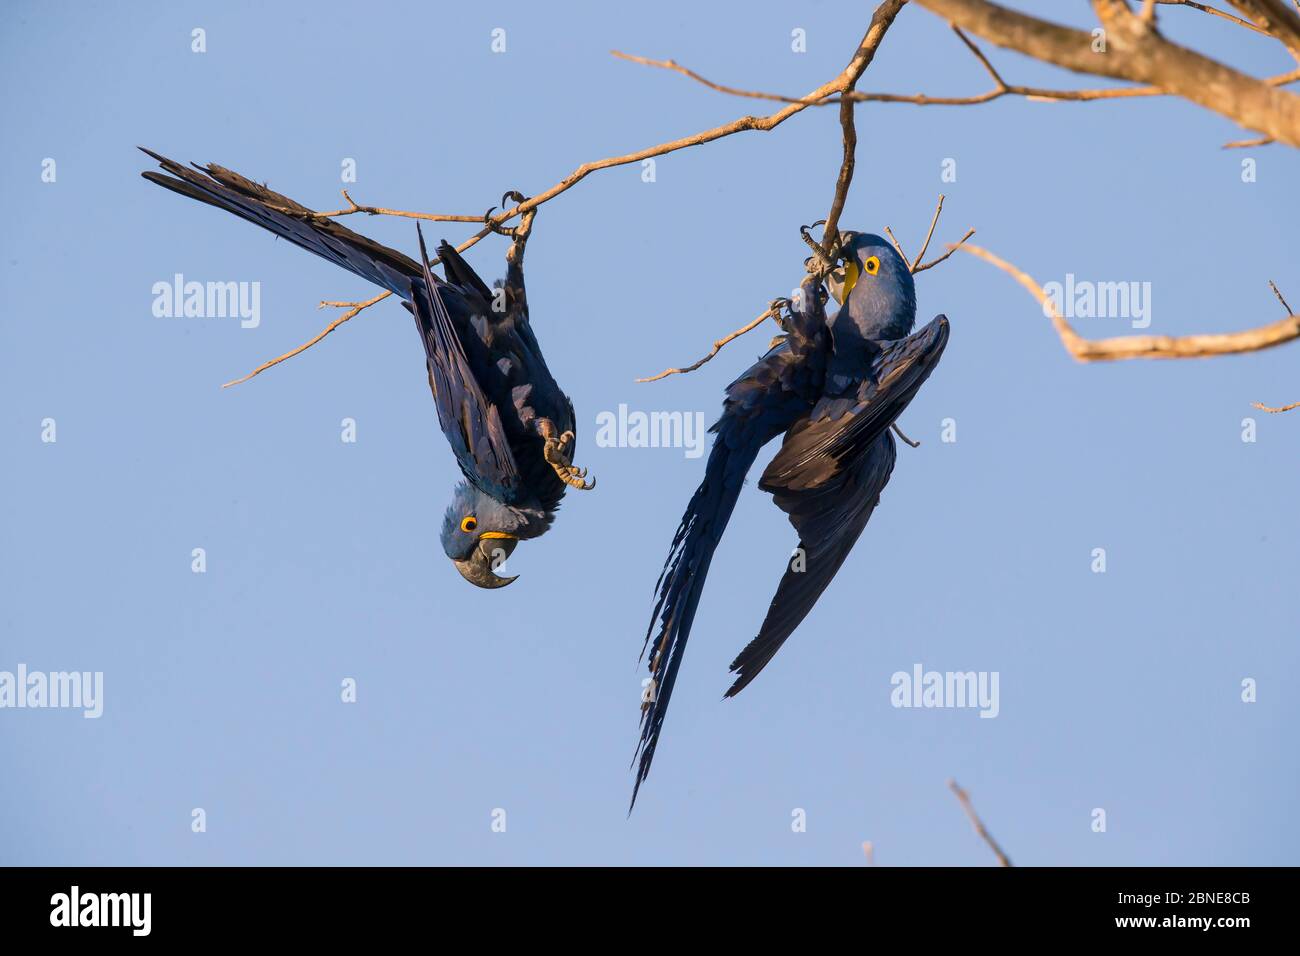 Guacamayos de jacinto (Anodorhynchus hyacinthinus) jugando en ramas de árboles, Pantanal, Brasil. Foto de stock